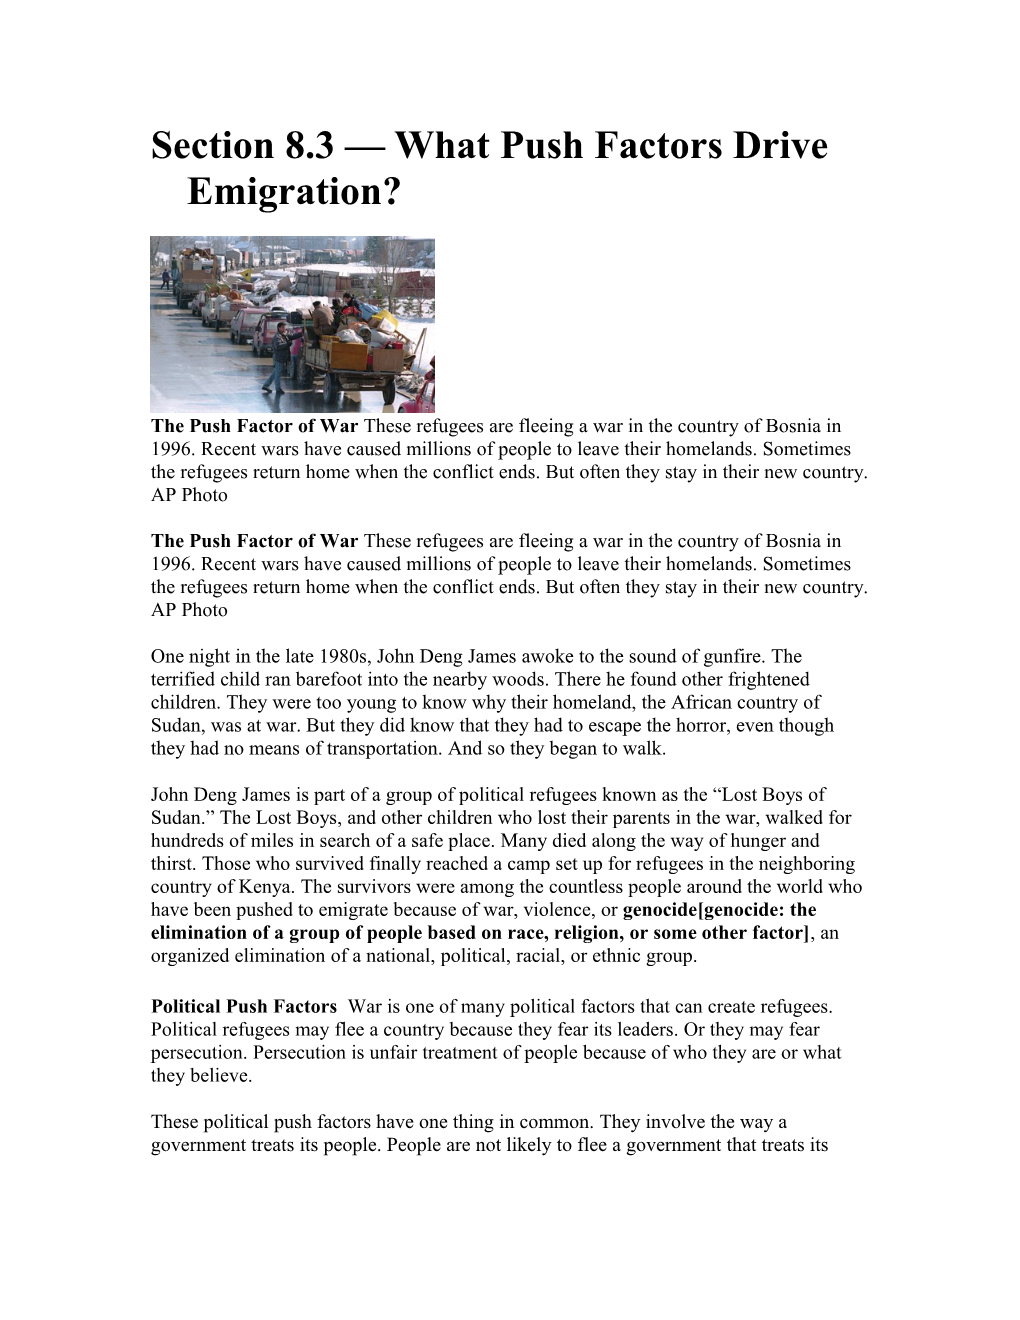 Section 8.3 What Push Factors Drive Emigration?